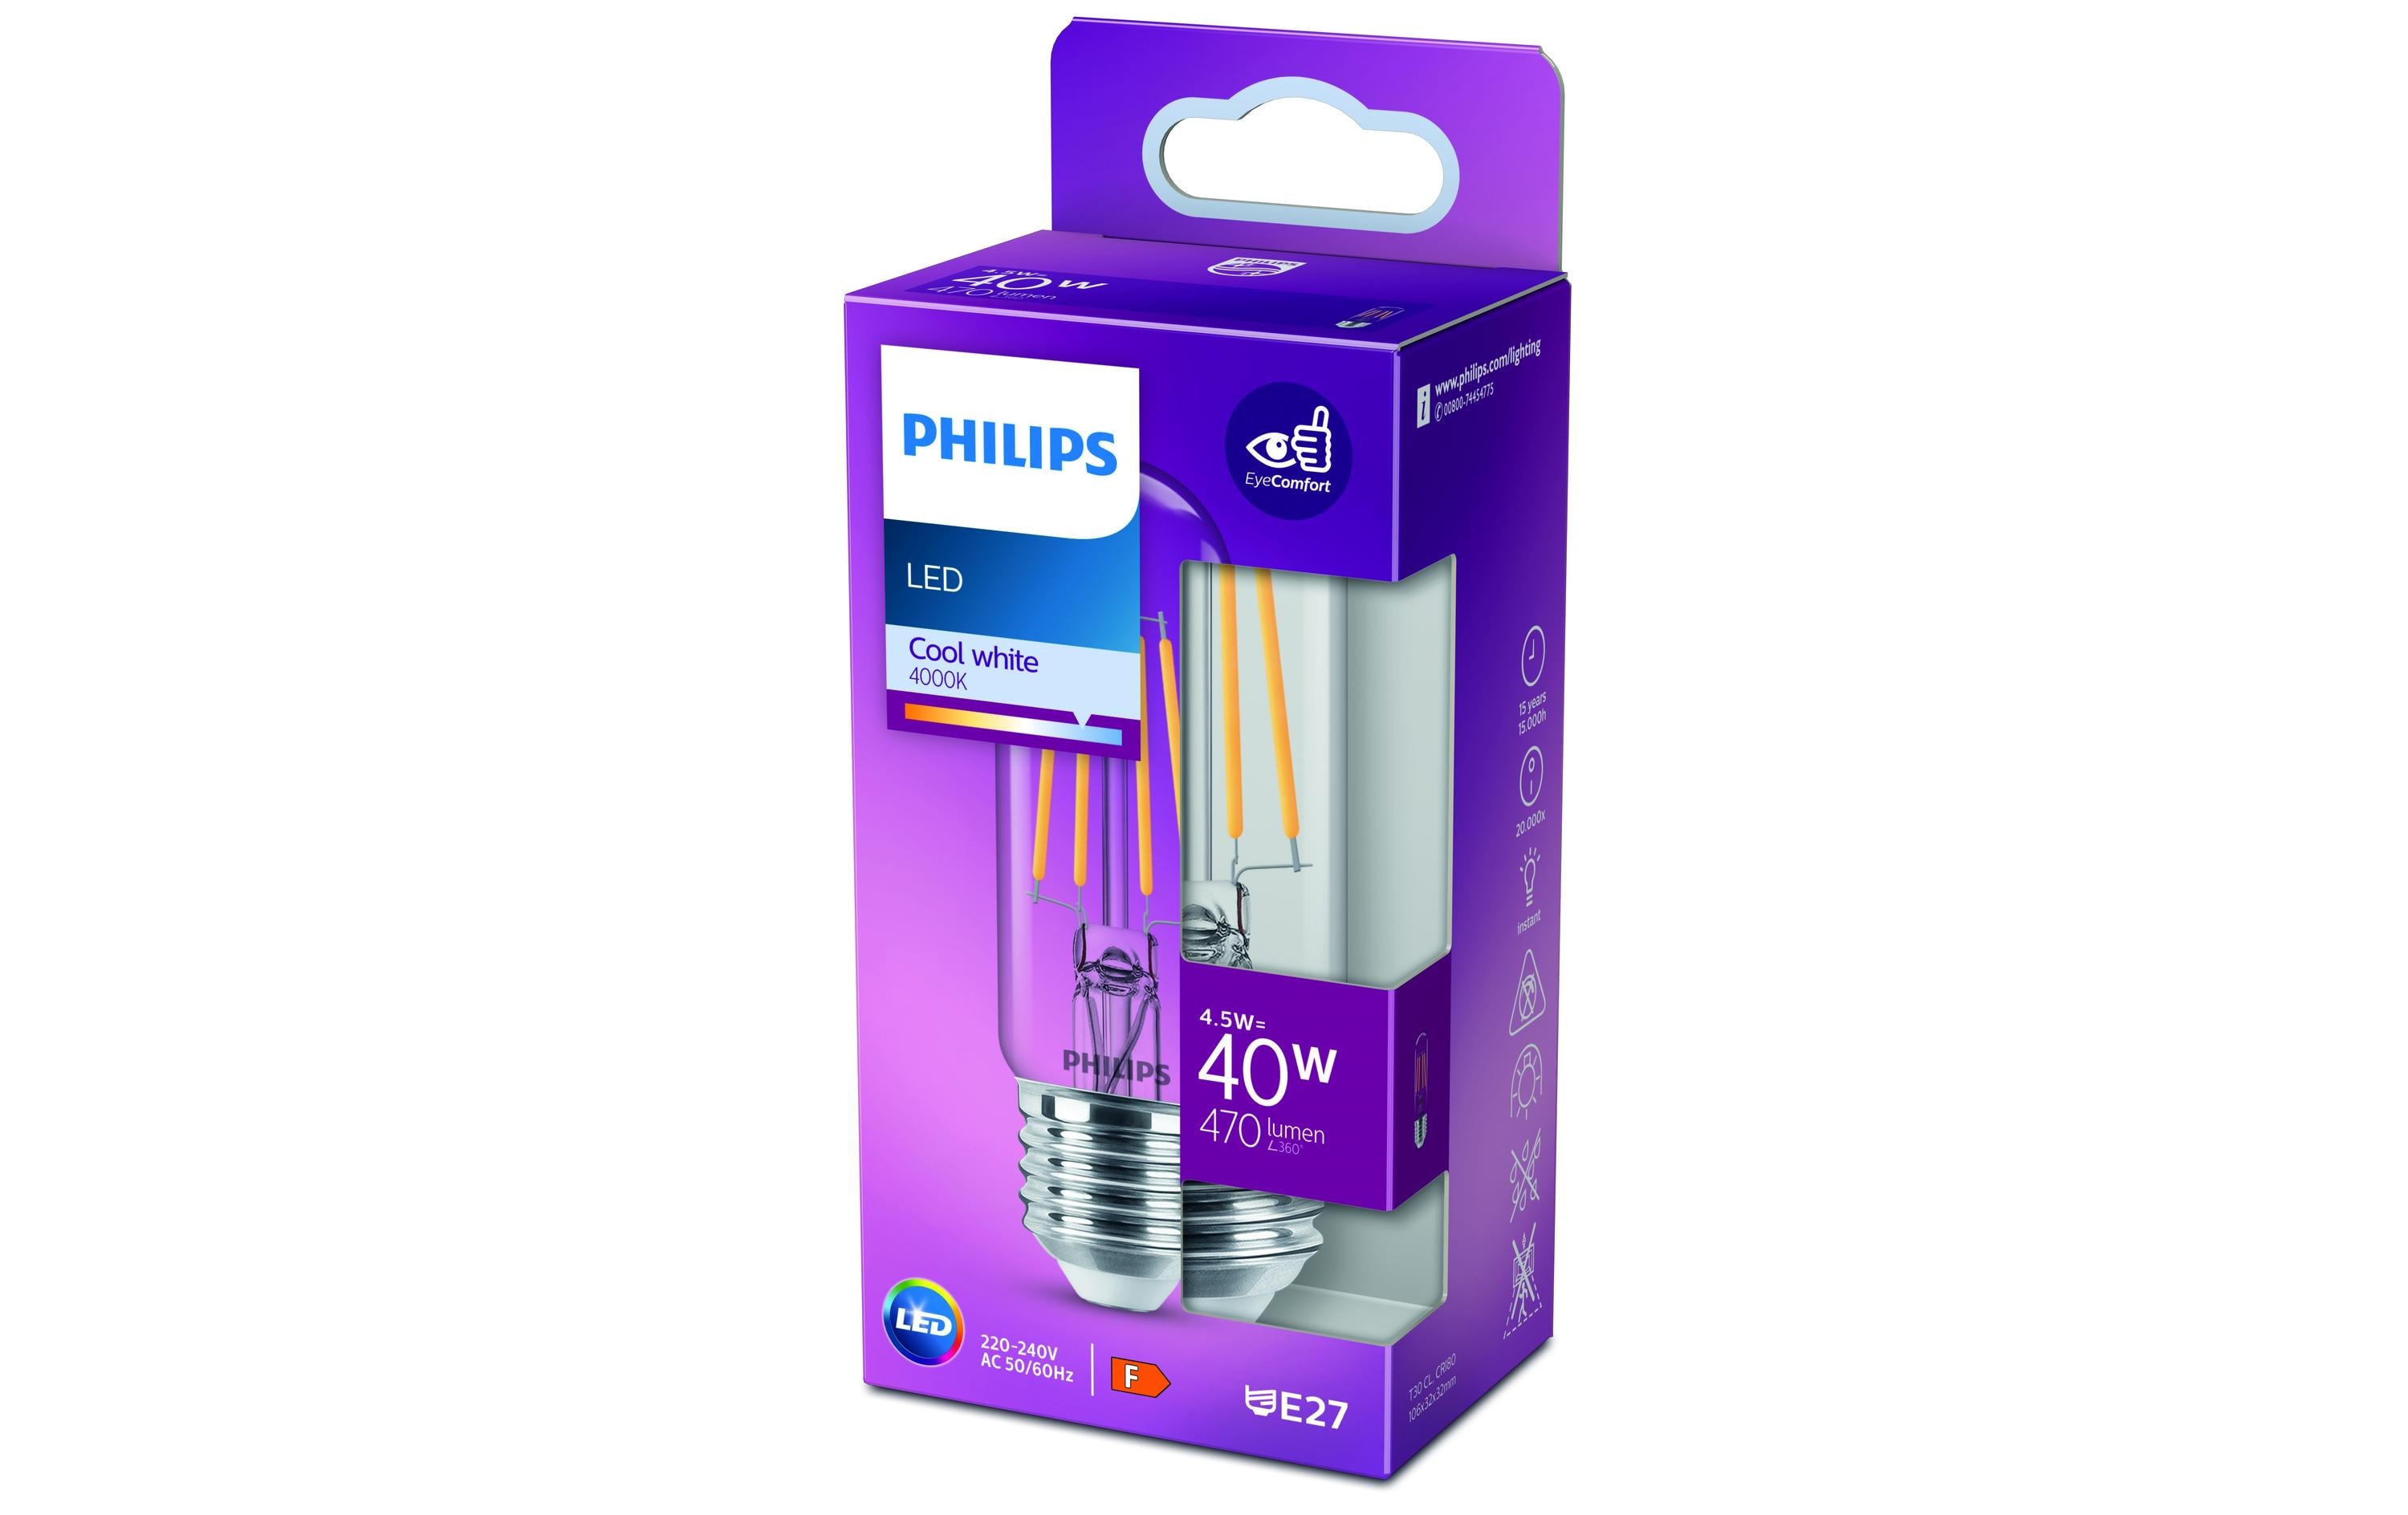 Philips LED T30 Stablampe, E27, Klar, Kaltweiss, nondim, 40W Ersatz